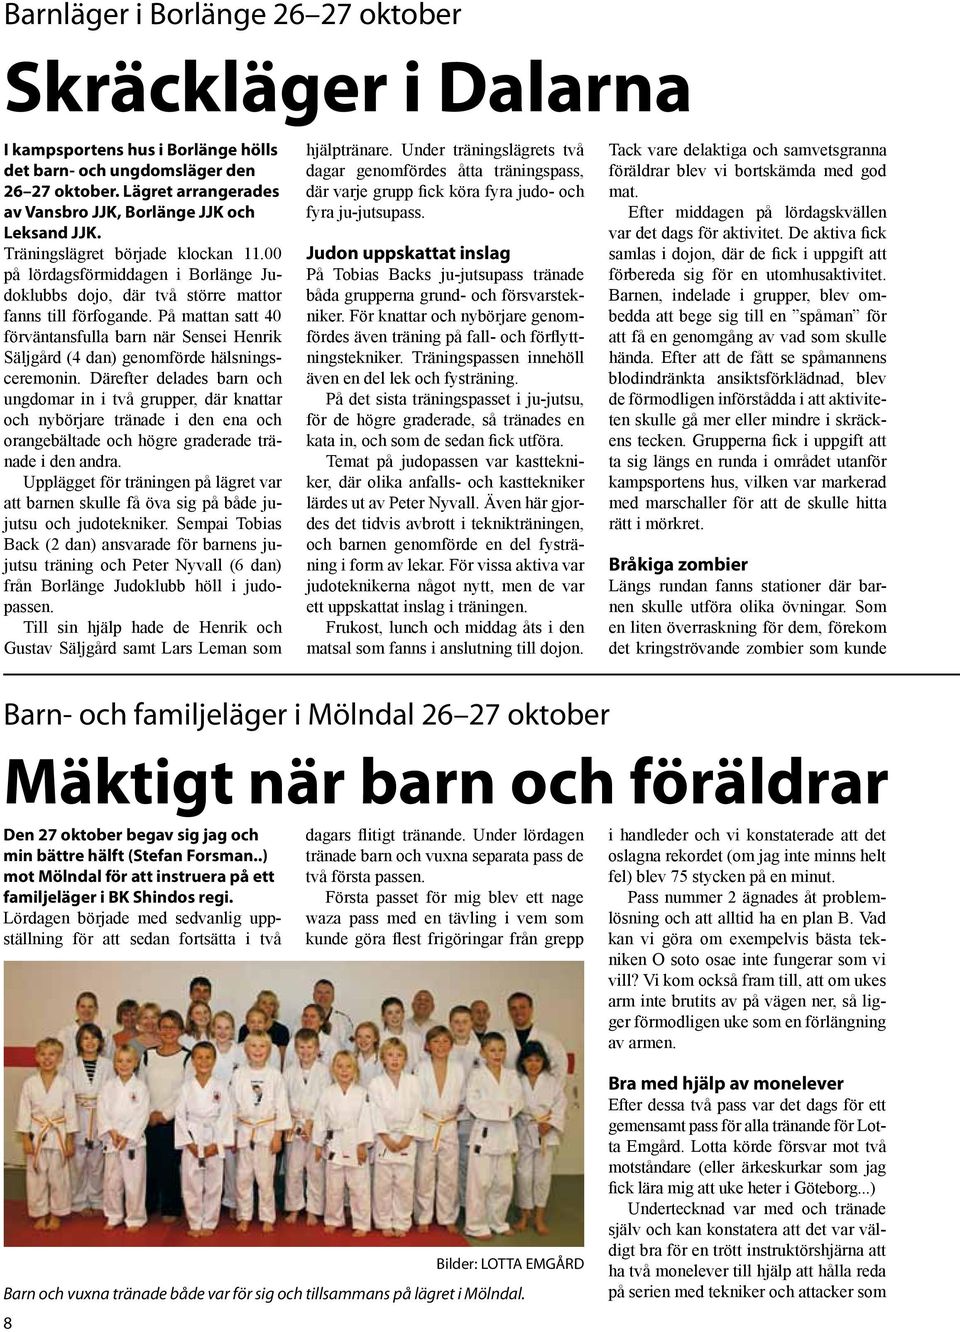 På mattan satt 40 förväntansfulla barn när Sensei Henrik Säljgård (4 dan) genomförde hälsningsceremonin.